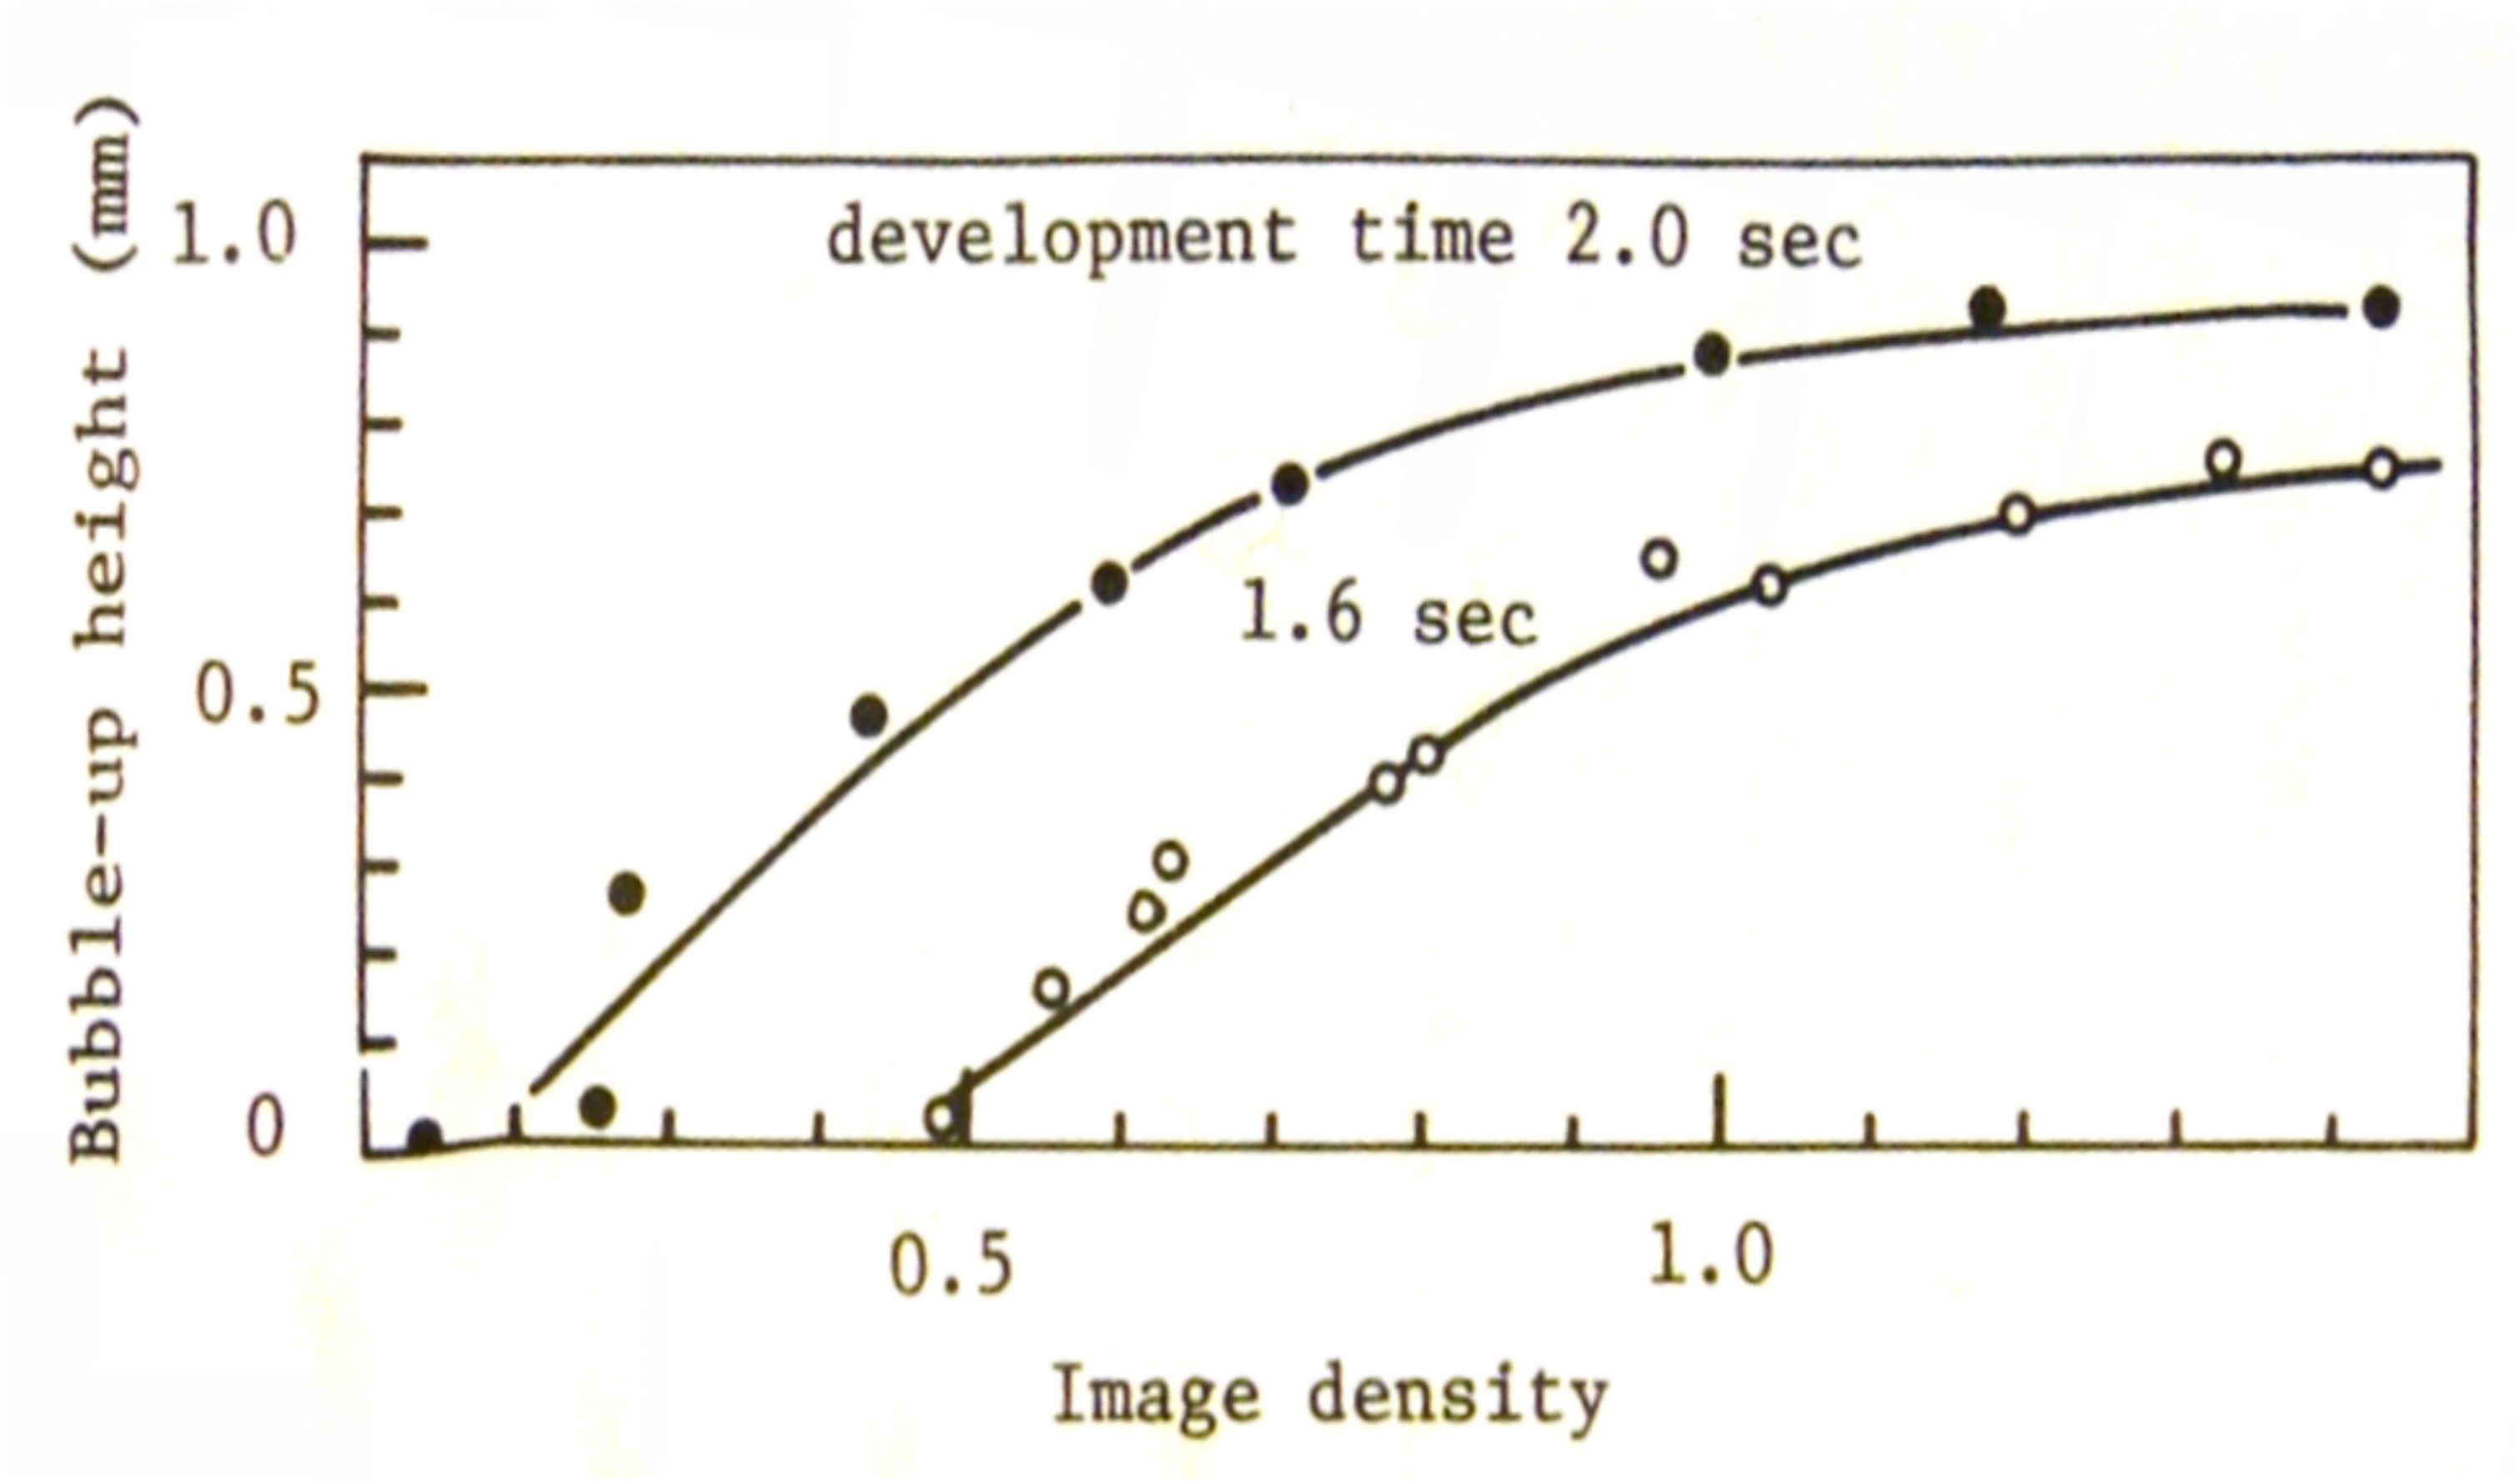 原画の光学濃度と出力隆起高の関係のグラフ